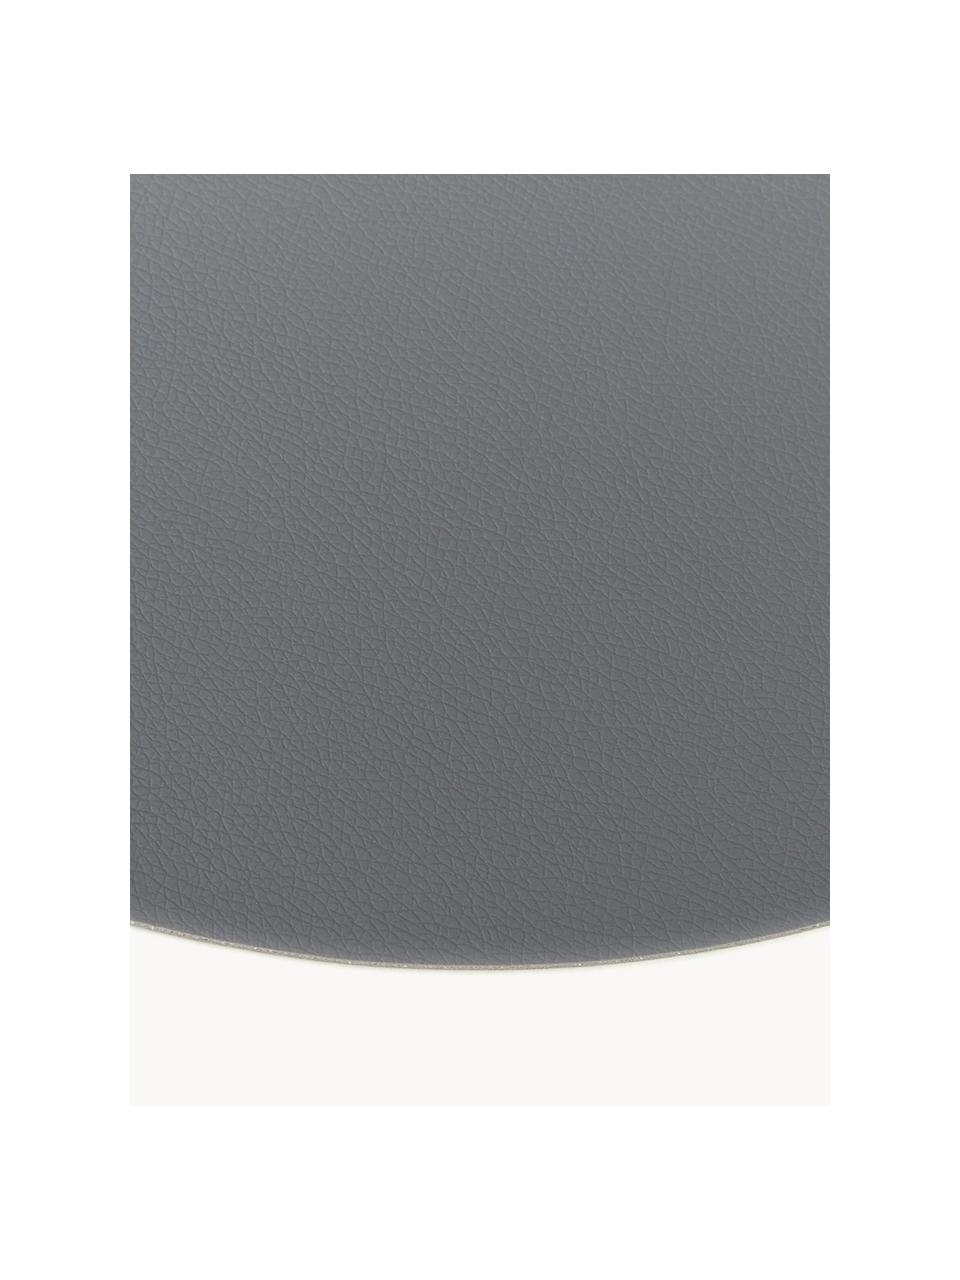 Manteles individuales redondos de cuero sintético Pik, 2 uds., Plástico (PVC) es aspecto de cuero, Gris oscuro, Ø 38 cm